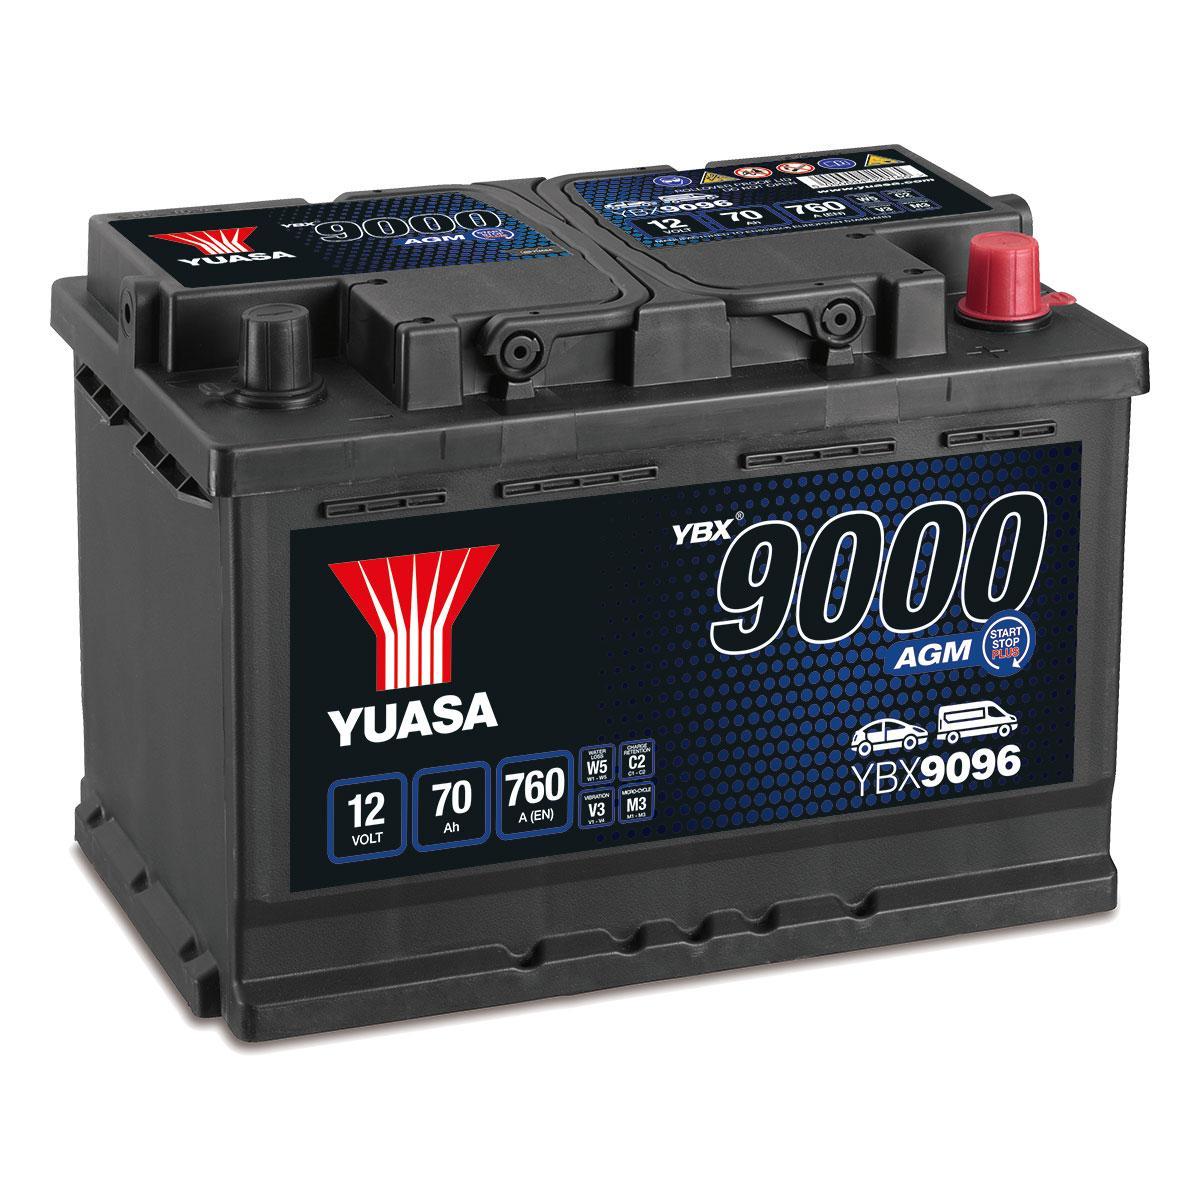 YBX9096 Yuasa 12v 70Ah AGM Car Battery – FREE UK mainland delivery